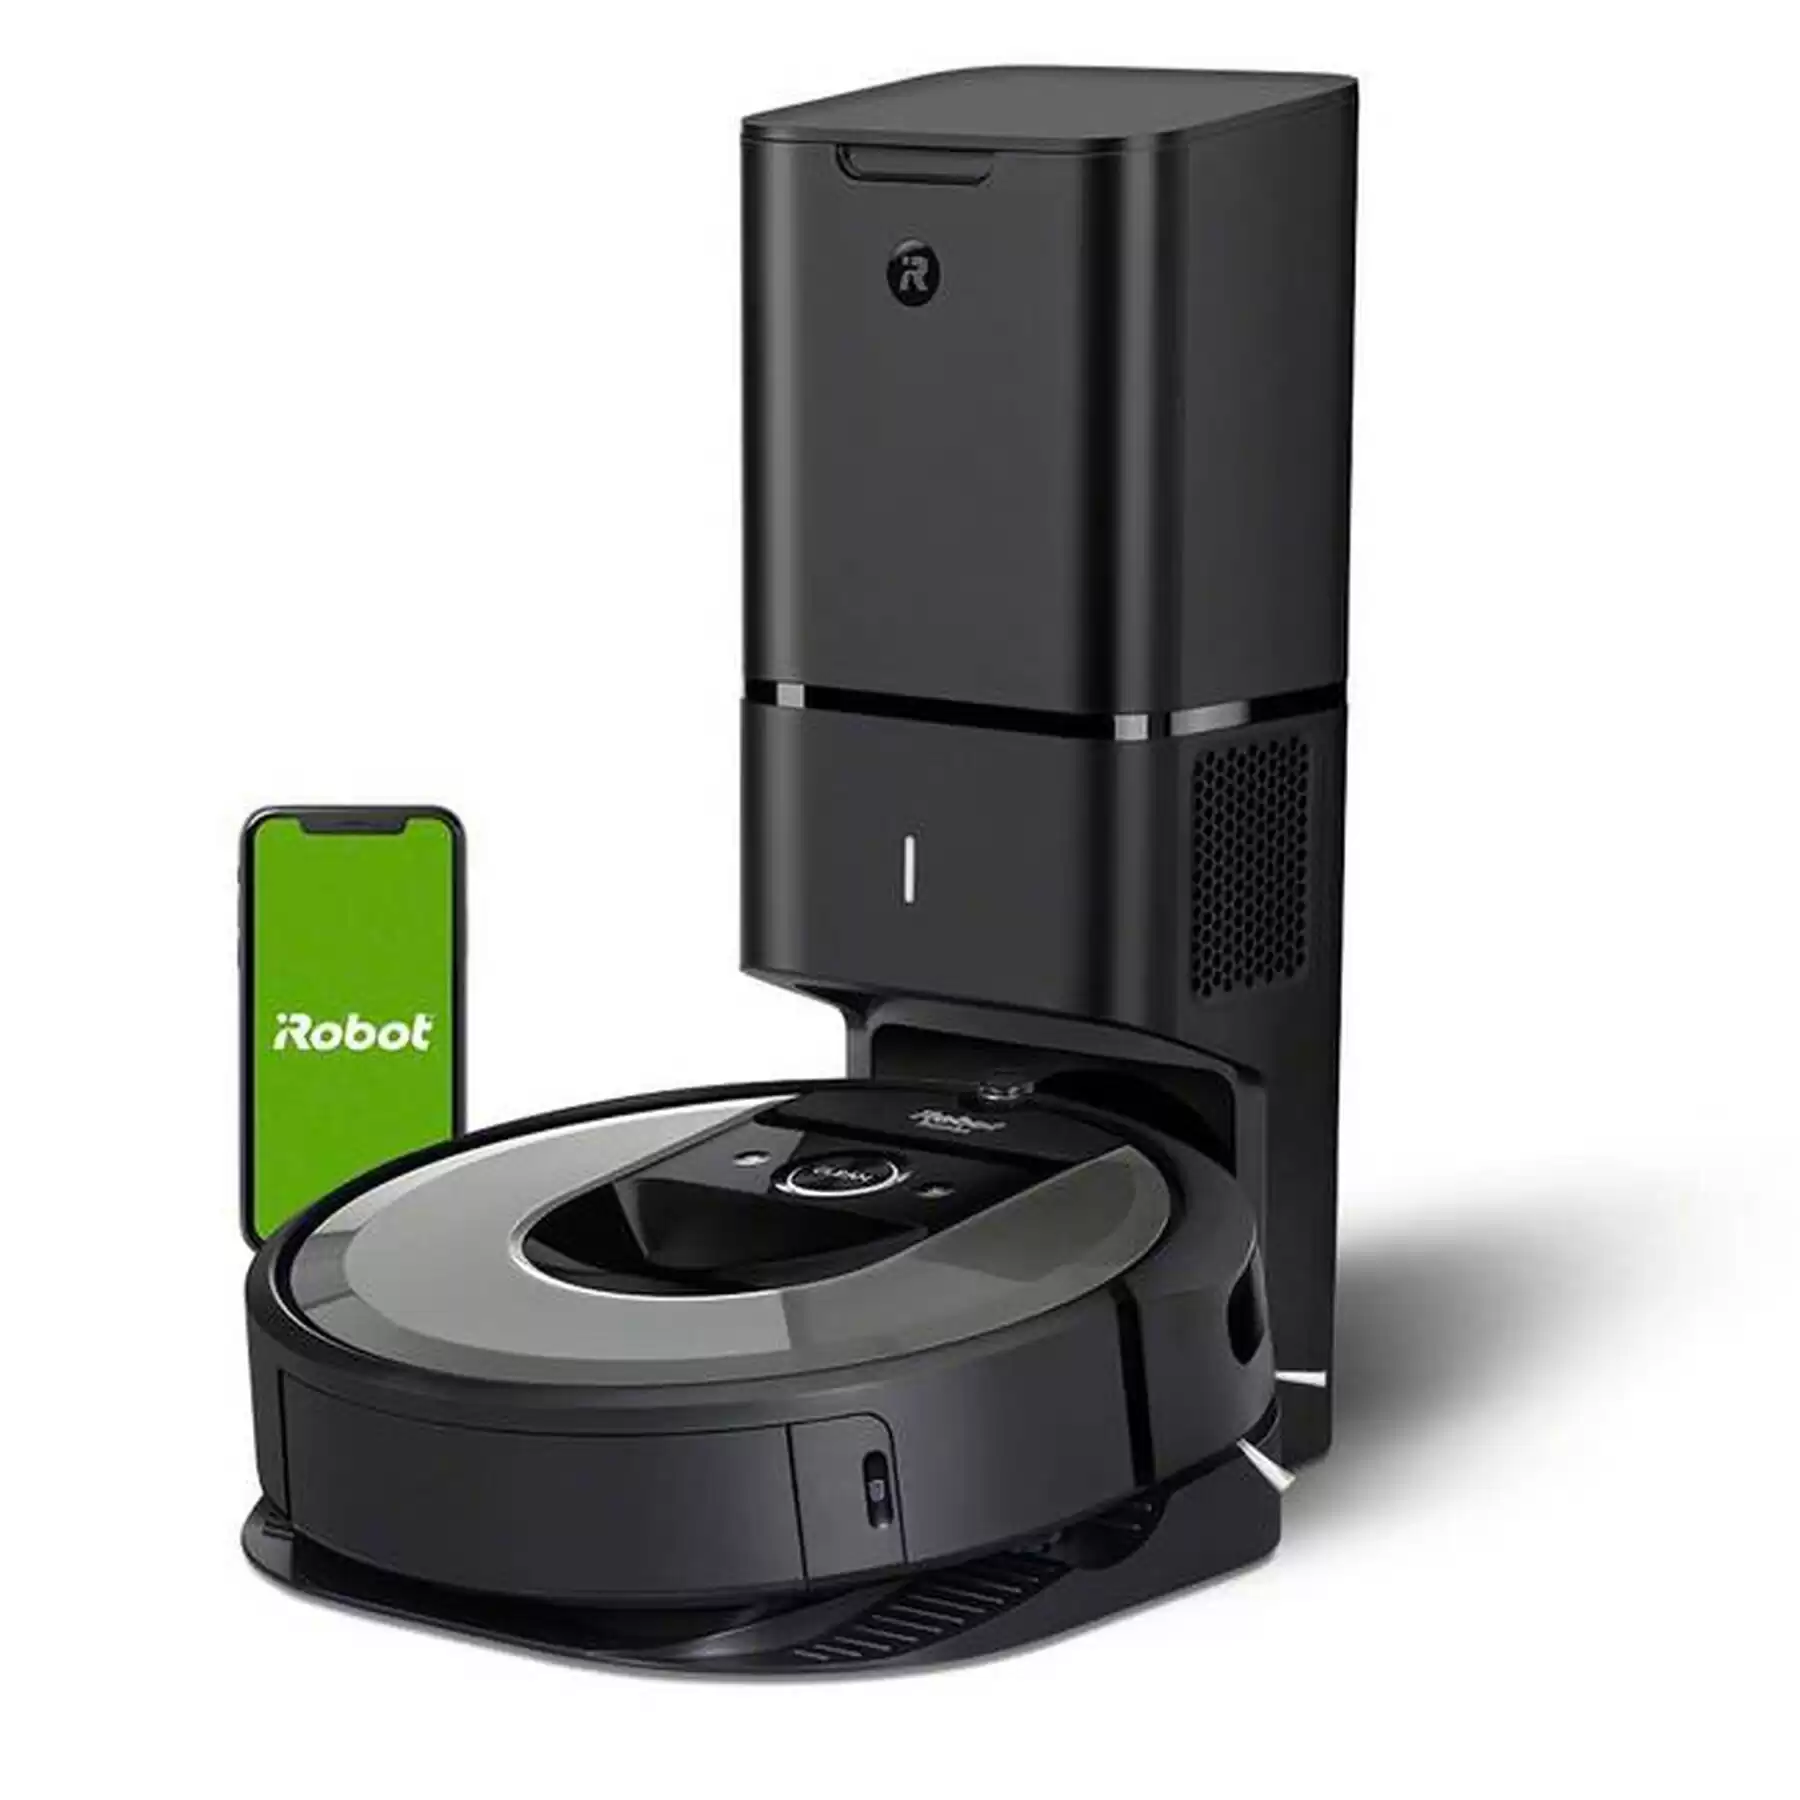 Roomba i8+ Self-Emptying Robot Vacuum